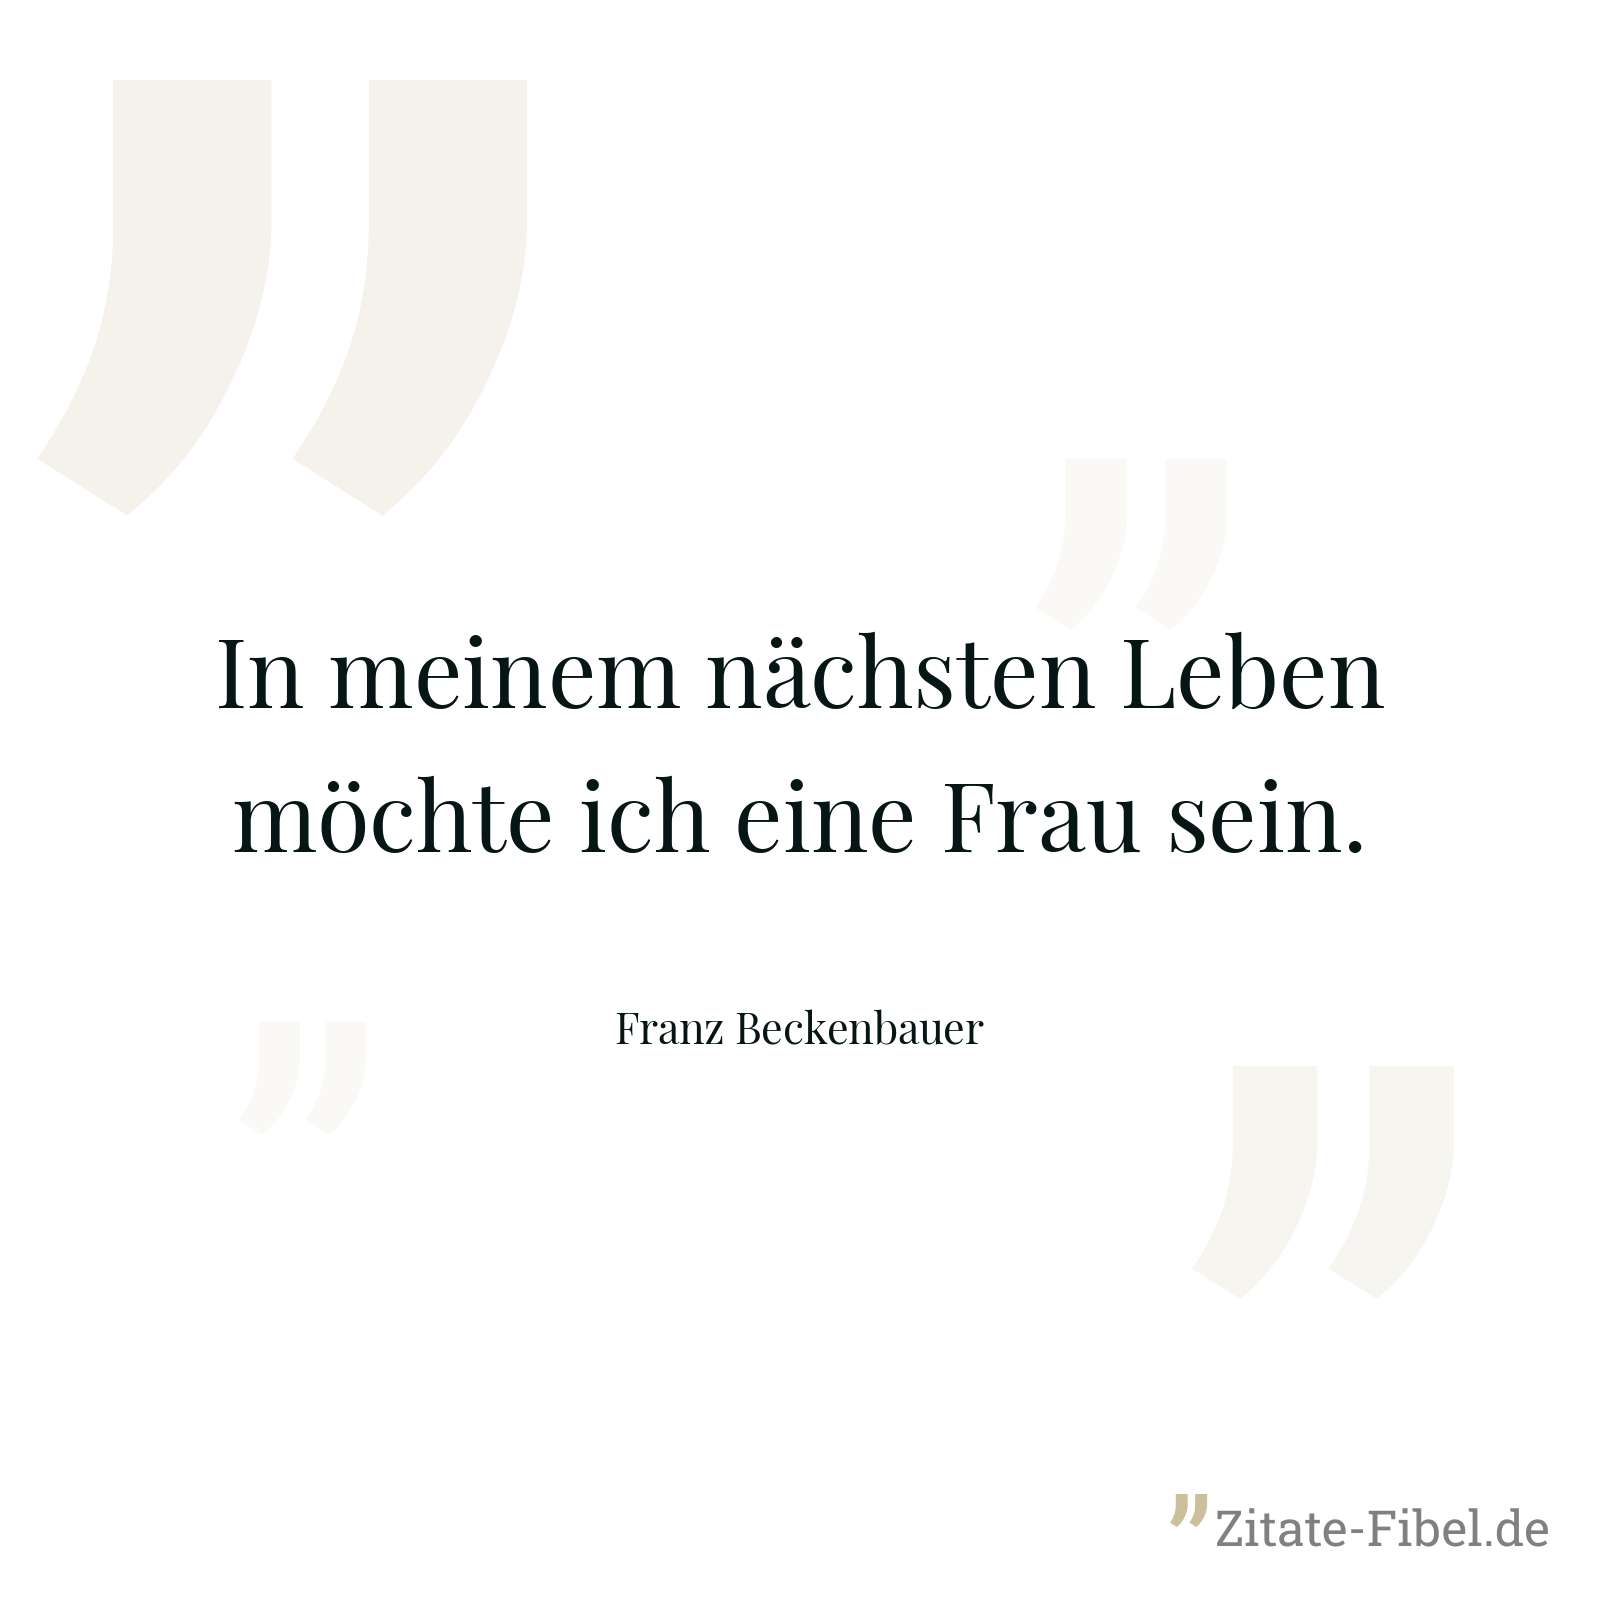 In meinem nächsten Leben möchte ich eine Frau sein. - Franz Beckenbauer